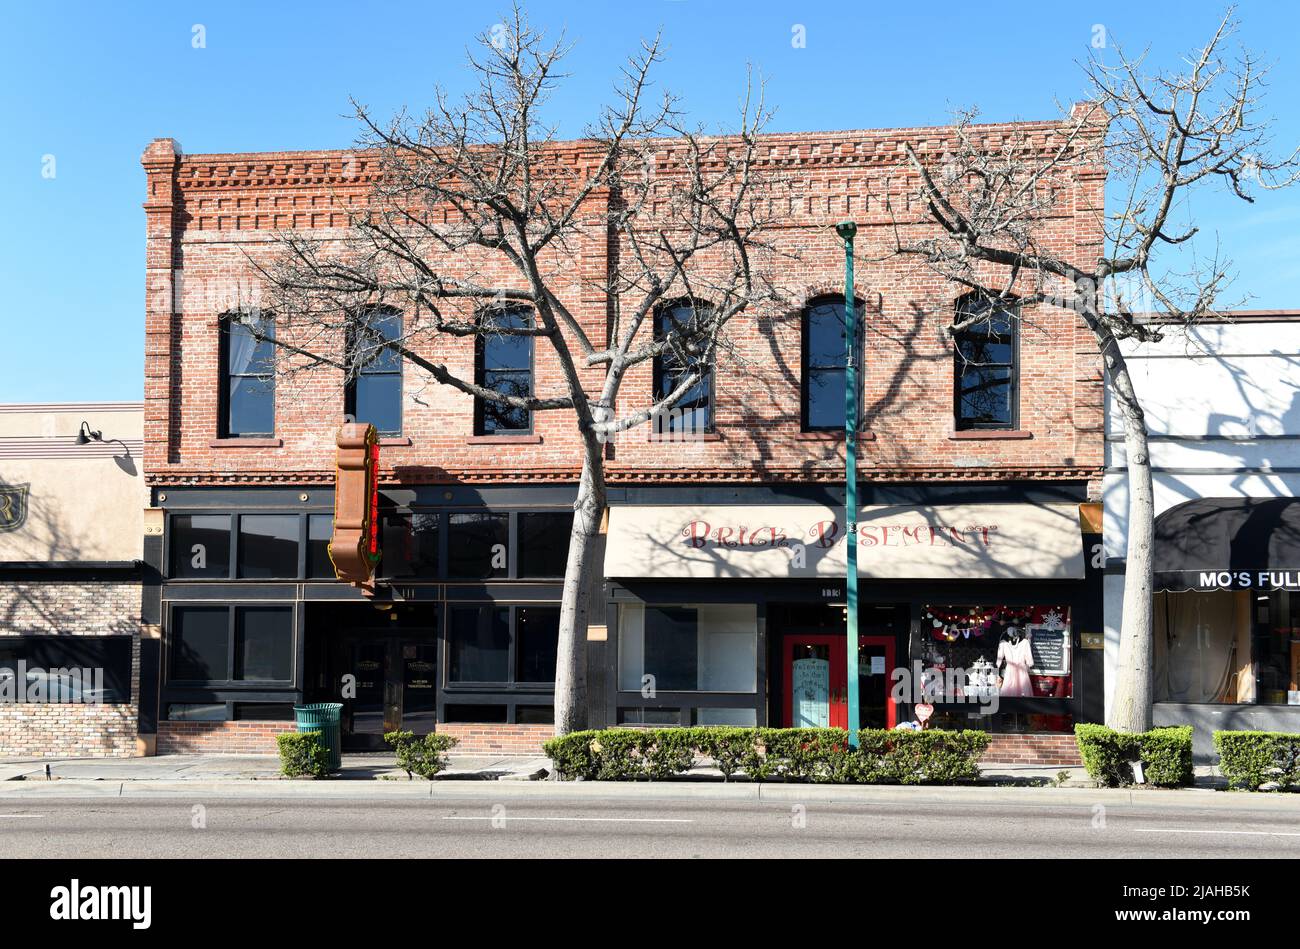 FULLERTON, KALIFORNIEN - 24. JAN 2020: Geschäfte und Restaurants in der historischen Innenstadt von Fullerton. Stockfoto